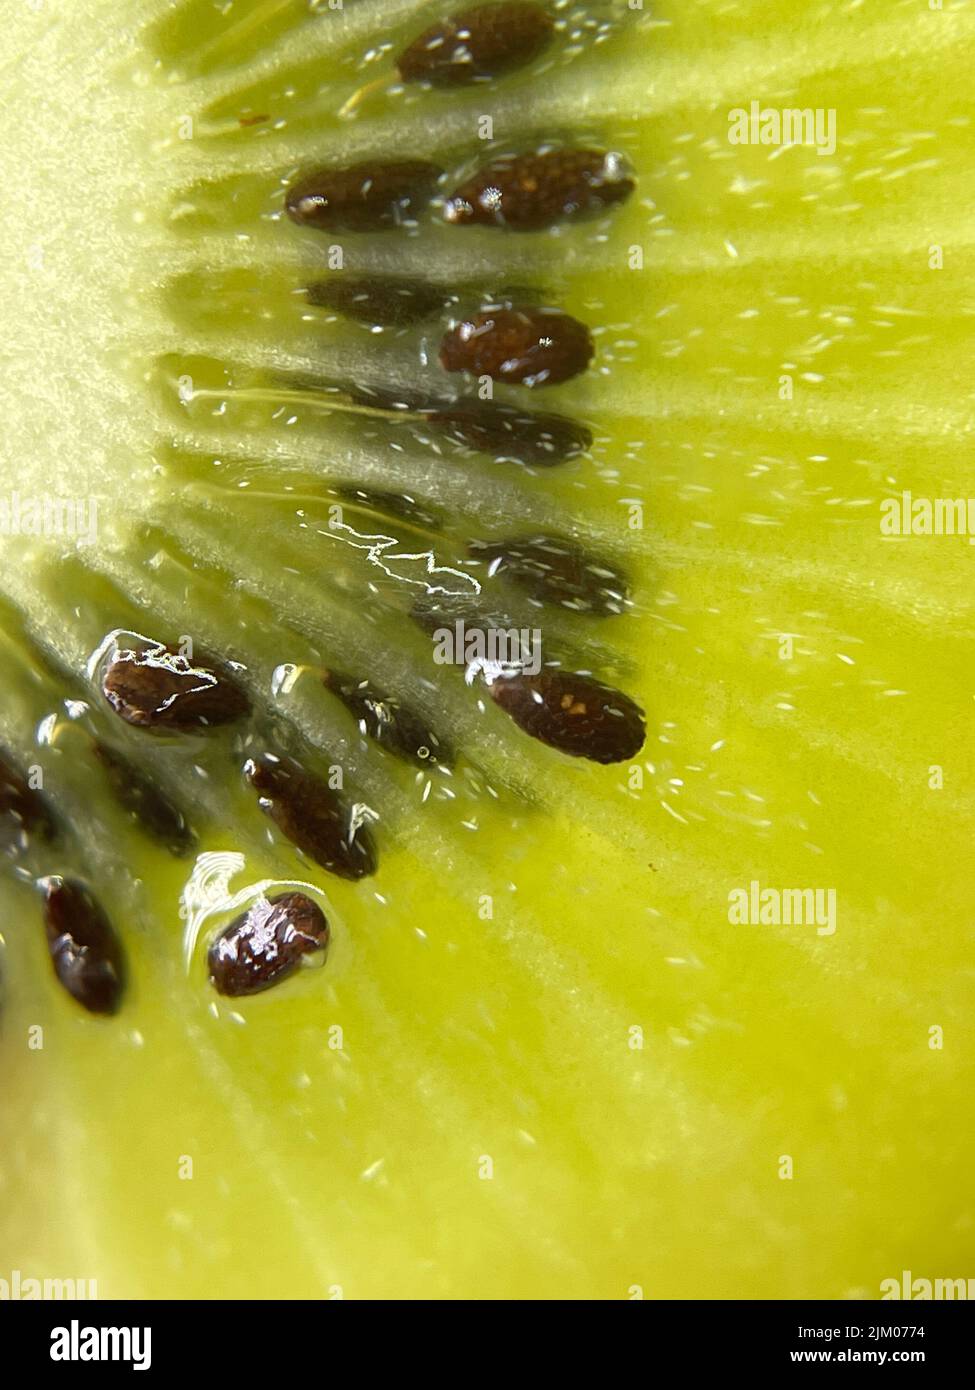 A vertical closeup of a juicy kiwi fruit Stock Photo